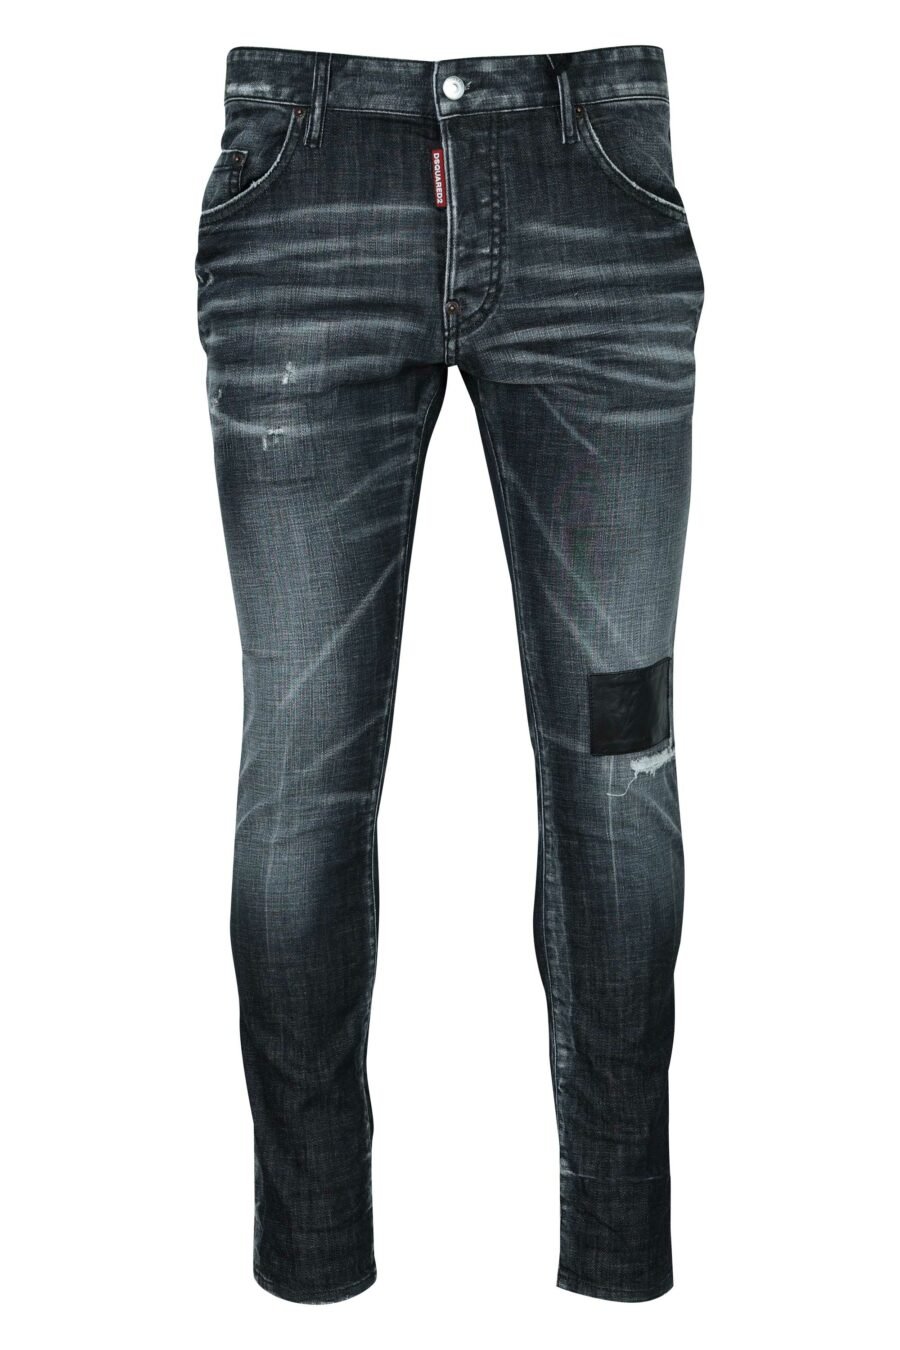 Jean noir "skater jean" avec patch et semi-usure - 8054148522018